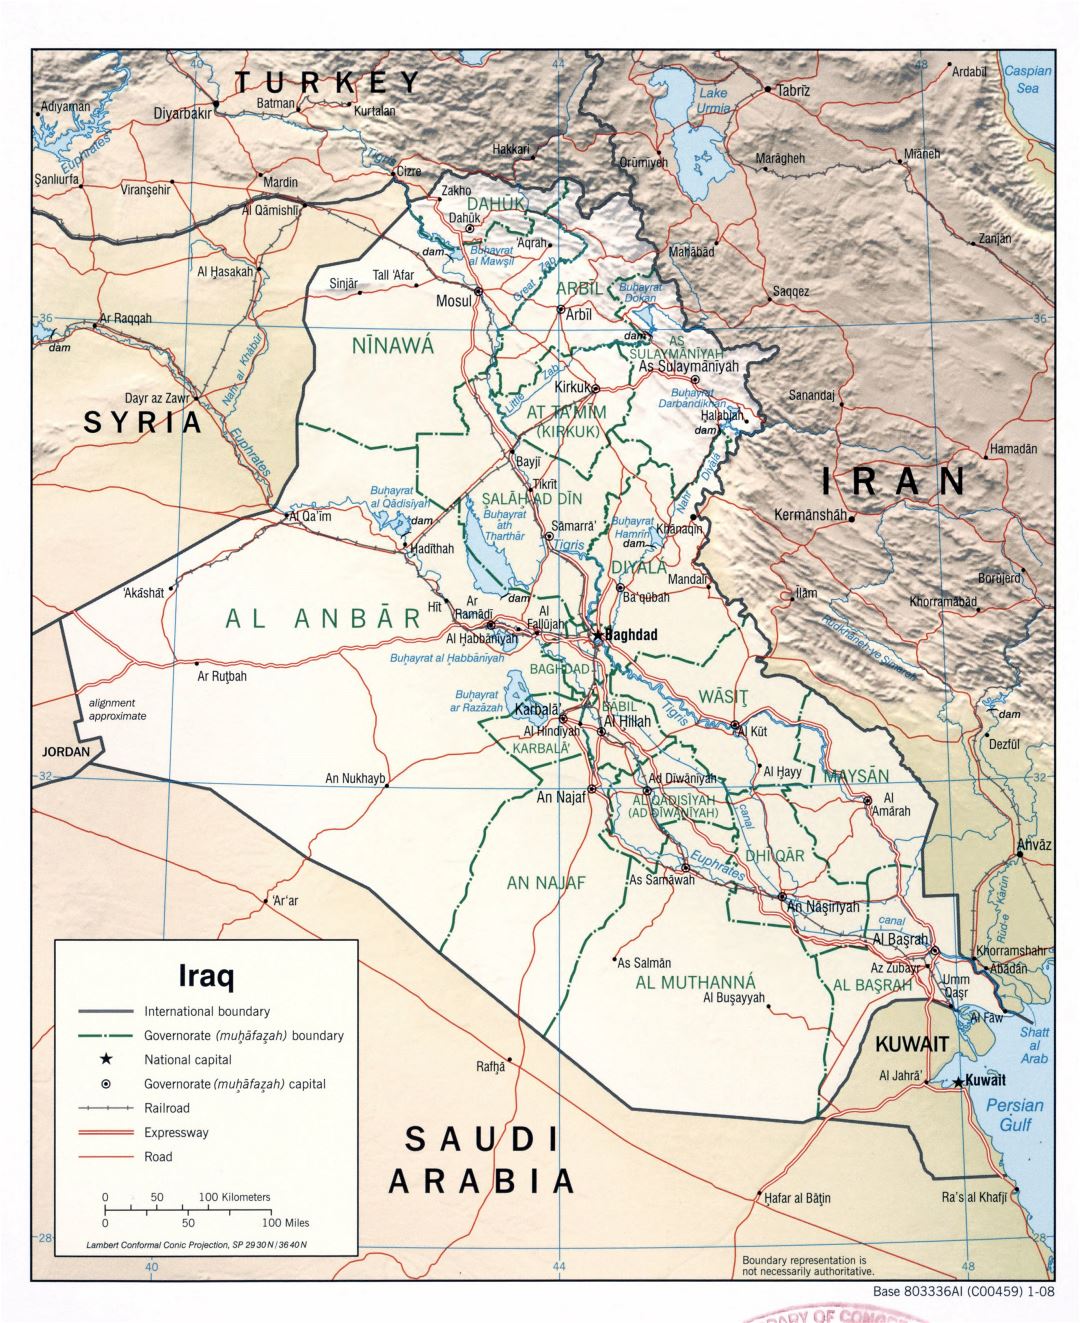 Grande detallado mapa político y administrativo de Irak con relieve, caminos, autopistas, ferrocarriles y principales ciudades - 2008